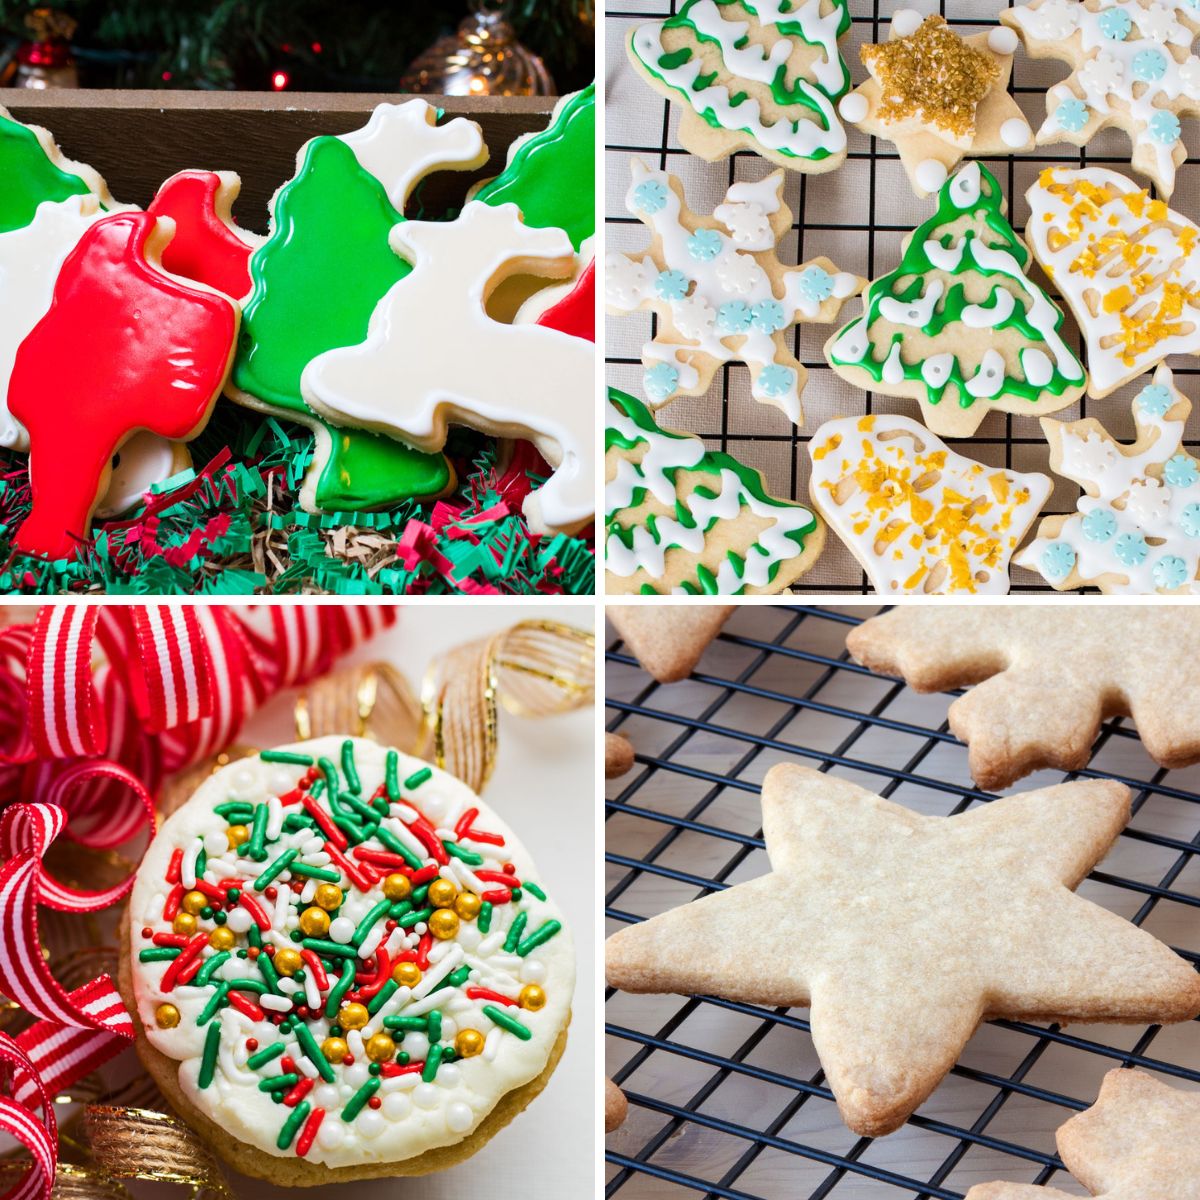 Cómo hacer galletas de azúcar, la guía definitiva para galletas festivas perfectas y sabrosas galletas de azúcar cada vez que presenta cuatro galletas increíbles en un collage cuadrado.